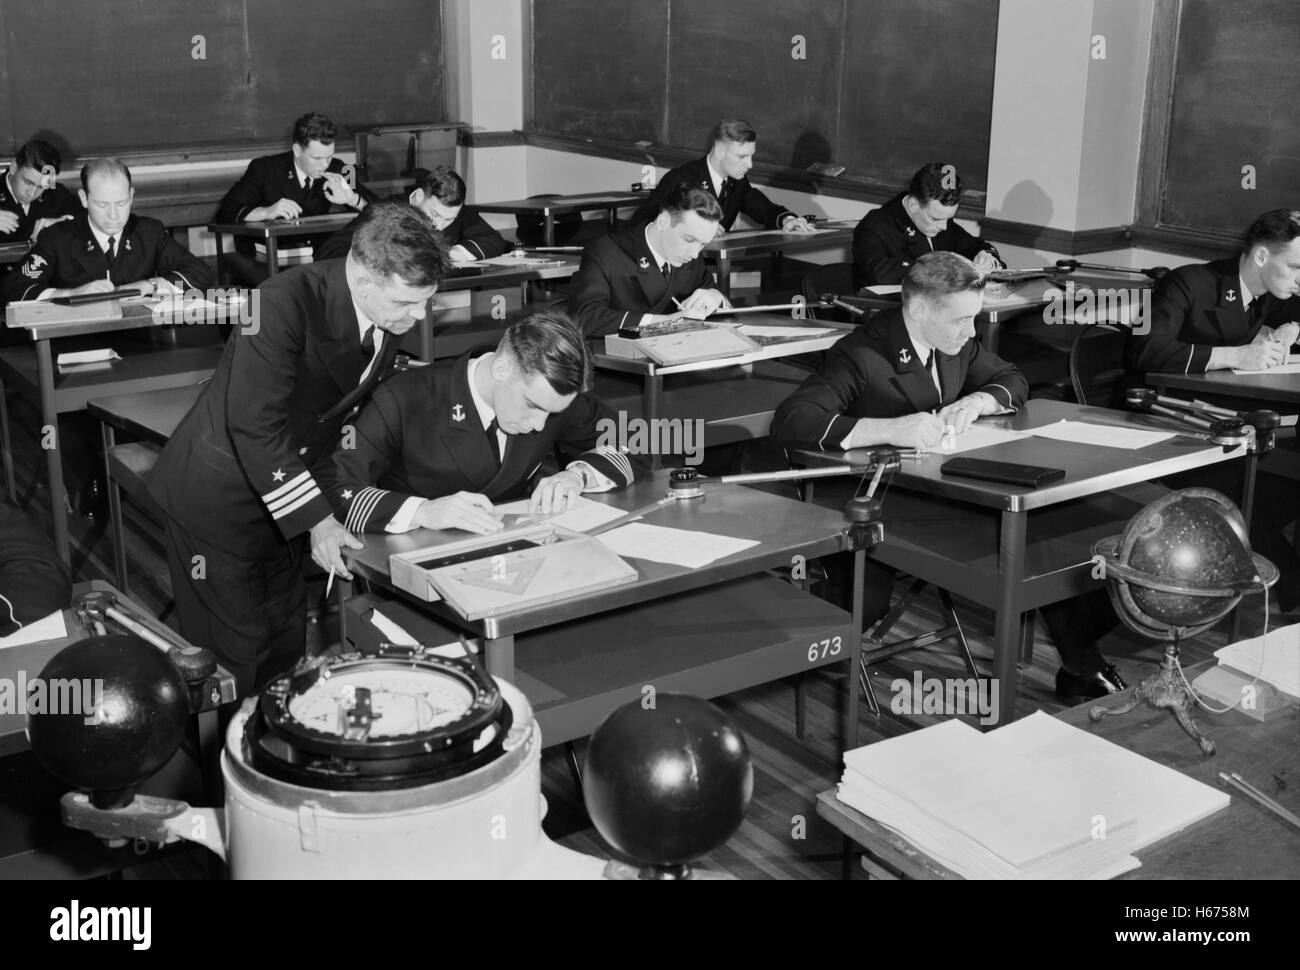 L'enseignement en classe, U.S. Naval Academy, Annapolis, Maryland, USA, par le Lieutenant Whitman pour Office of War Information, Juillet 1942 Banque D'Images